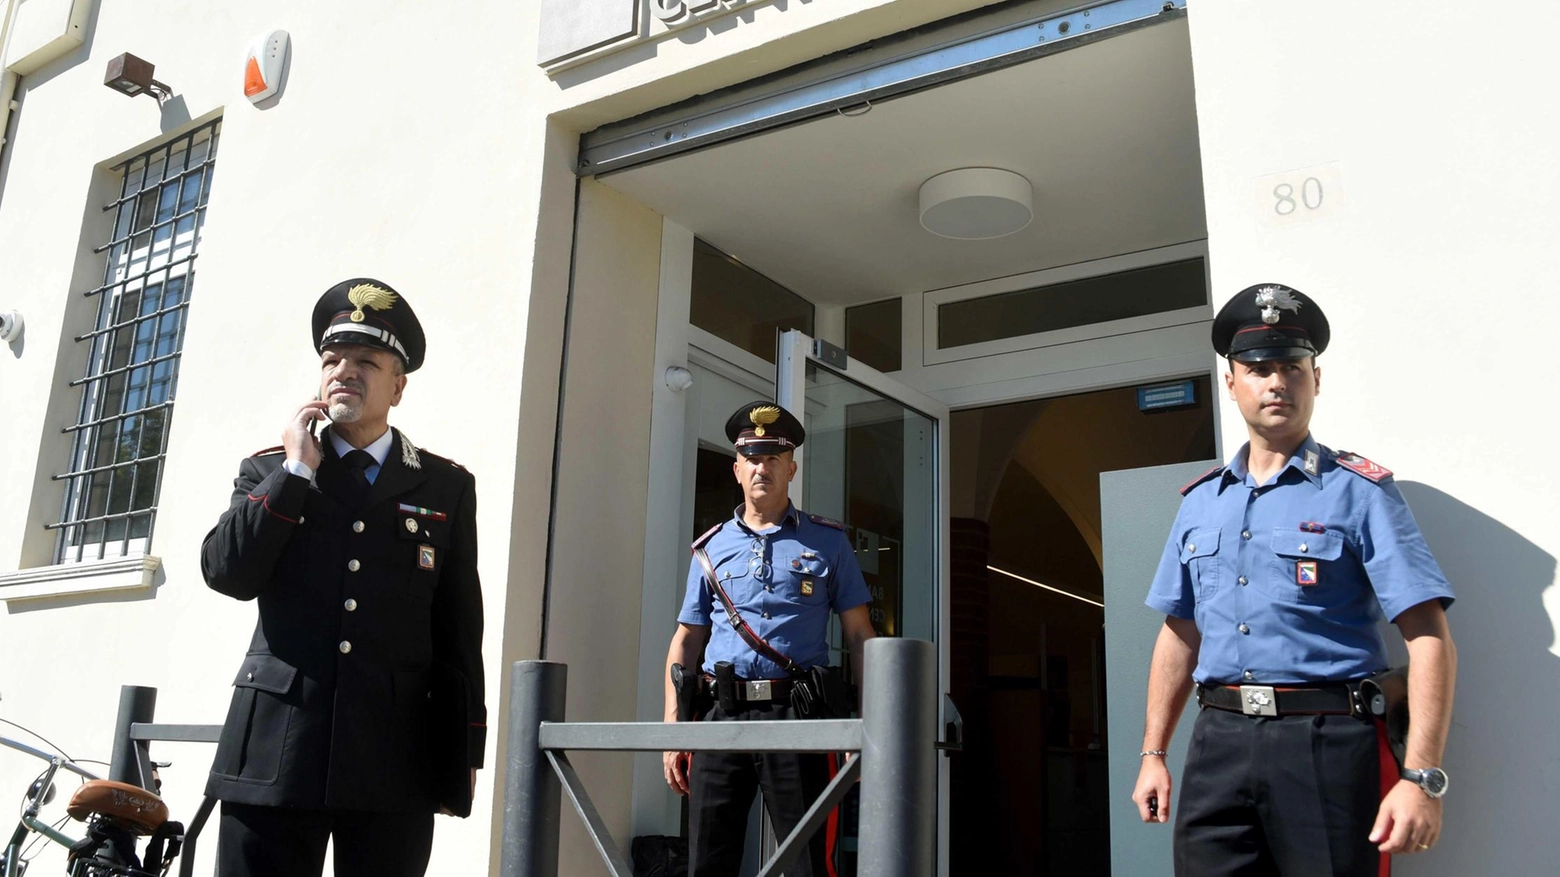 L’uomo, 42 anni, è stato arrestato in provincia di Milano mentre fuggiva dopo un raid andato a monte. Era l’unico latitante dei responsabili dell’assalto da trecentomila euro. Gli altri tre furono trovati in ottobre. .